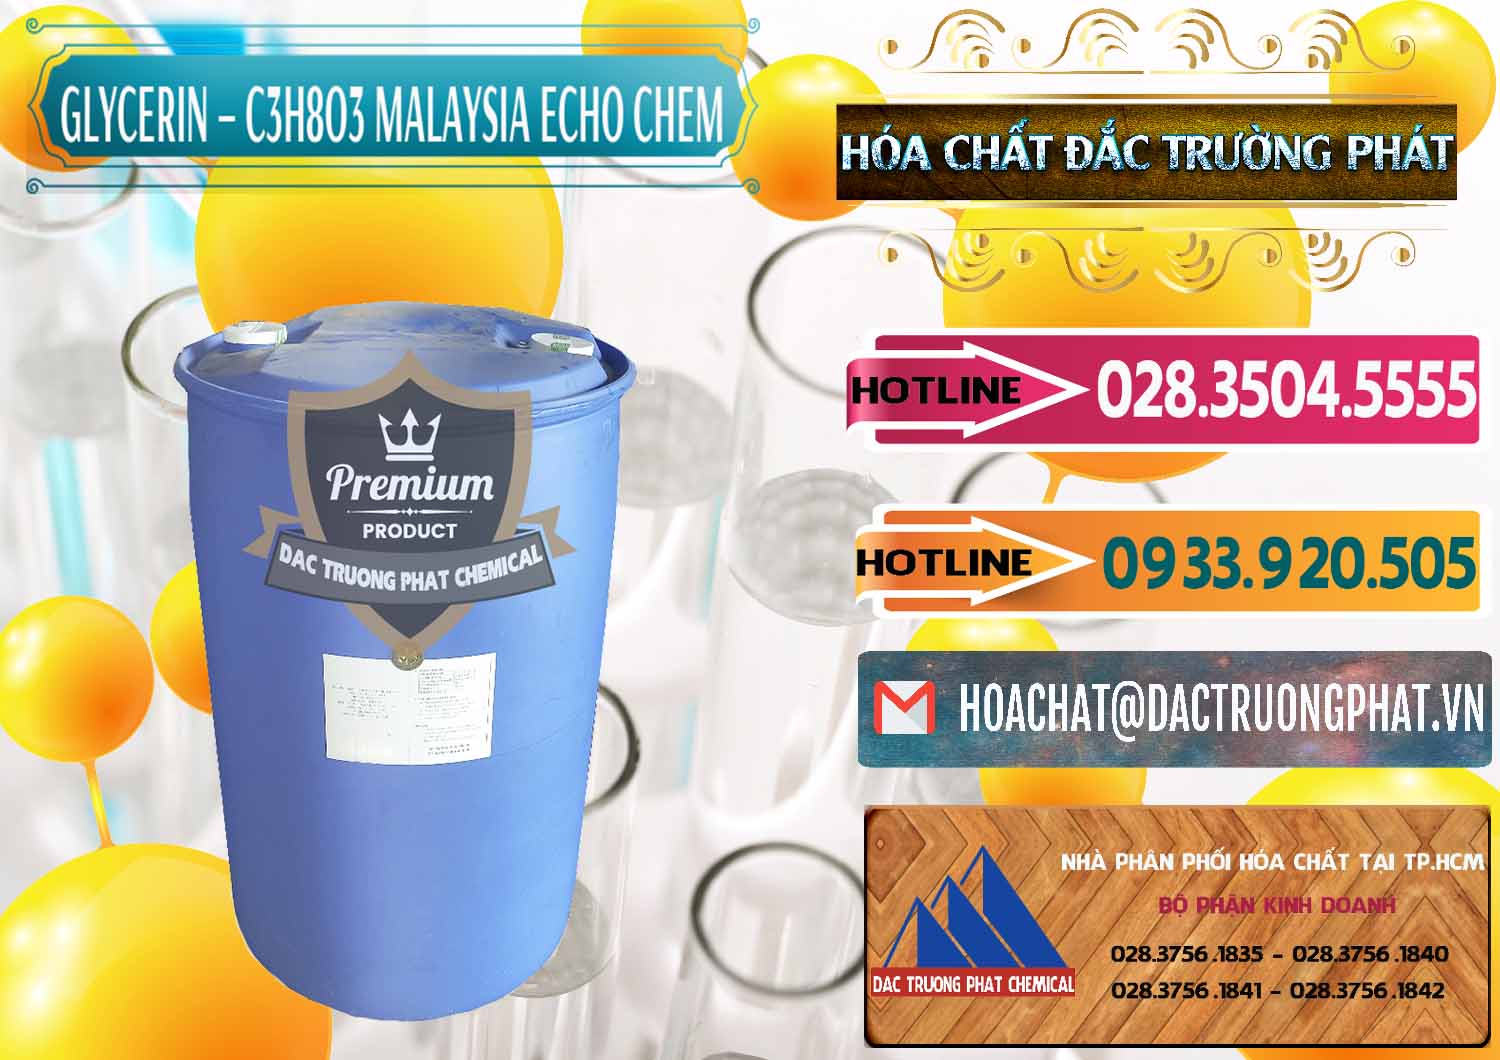 Công ty chuyên phân phối & bán C3H8O3 - Glycerin 99.7% Echo Chem Malaysia - 0273 - Công ty chuyên phân phối và bán hóa chất tại TP.HCM - dactruongphat.vn